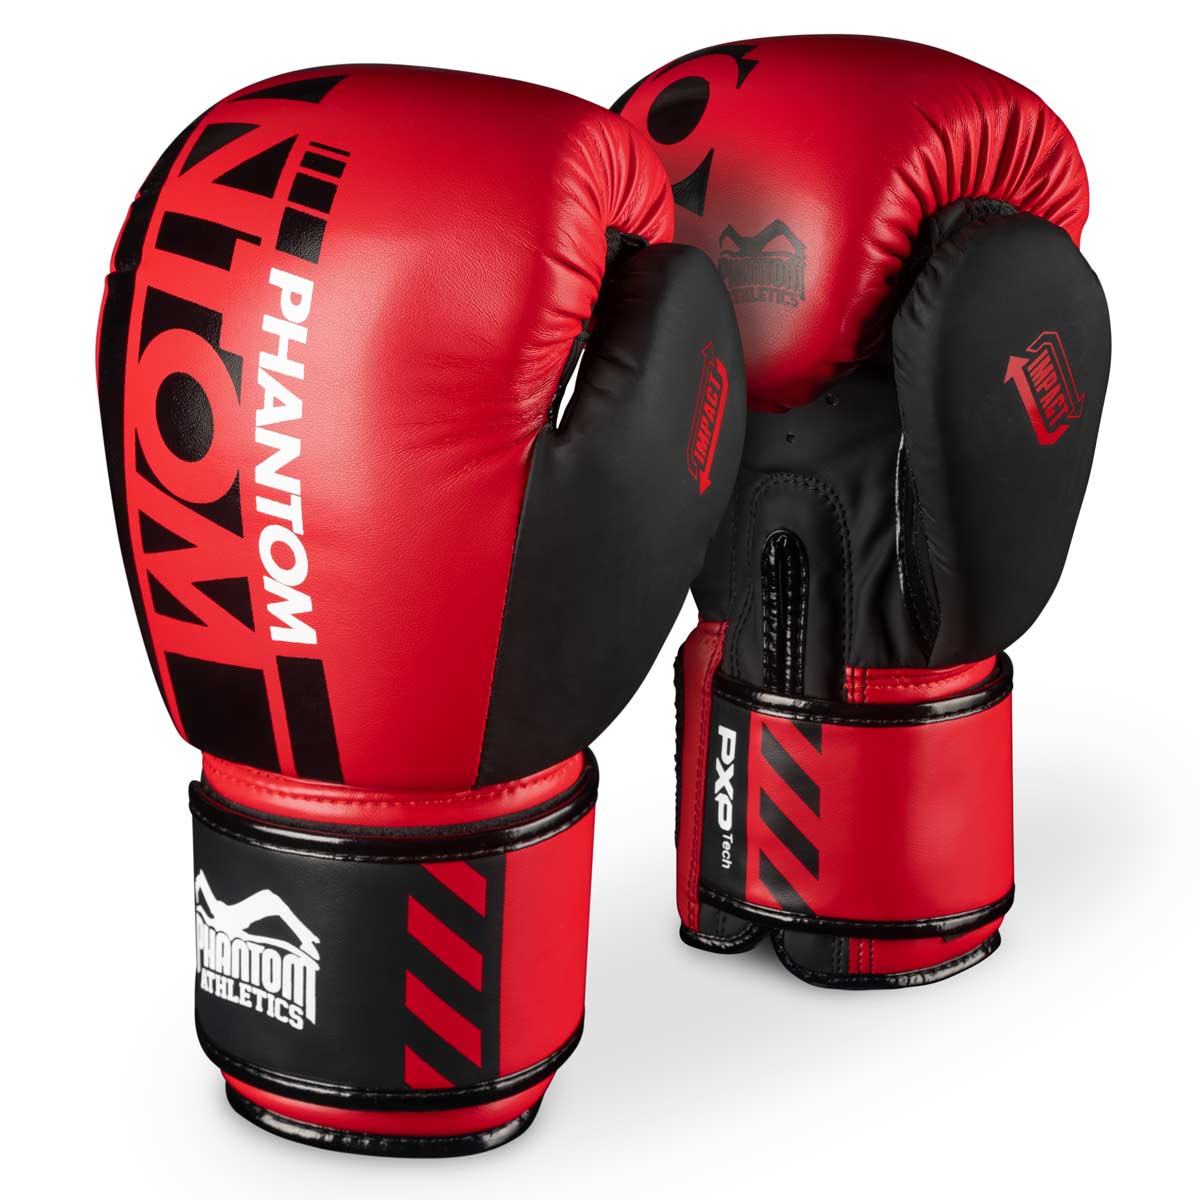 Phantom APEX i begrenset RØD utgave. Perfekte hansker for kampsporttrening som MMA, Muay Thai, Thaiboksing, K1 eller boksing.